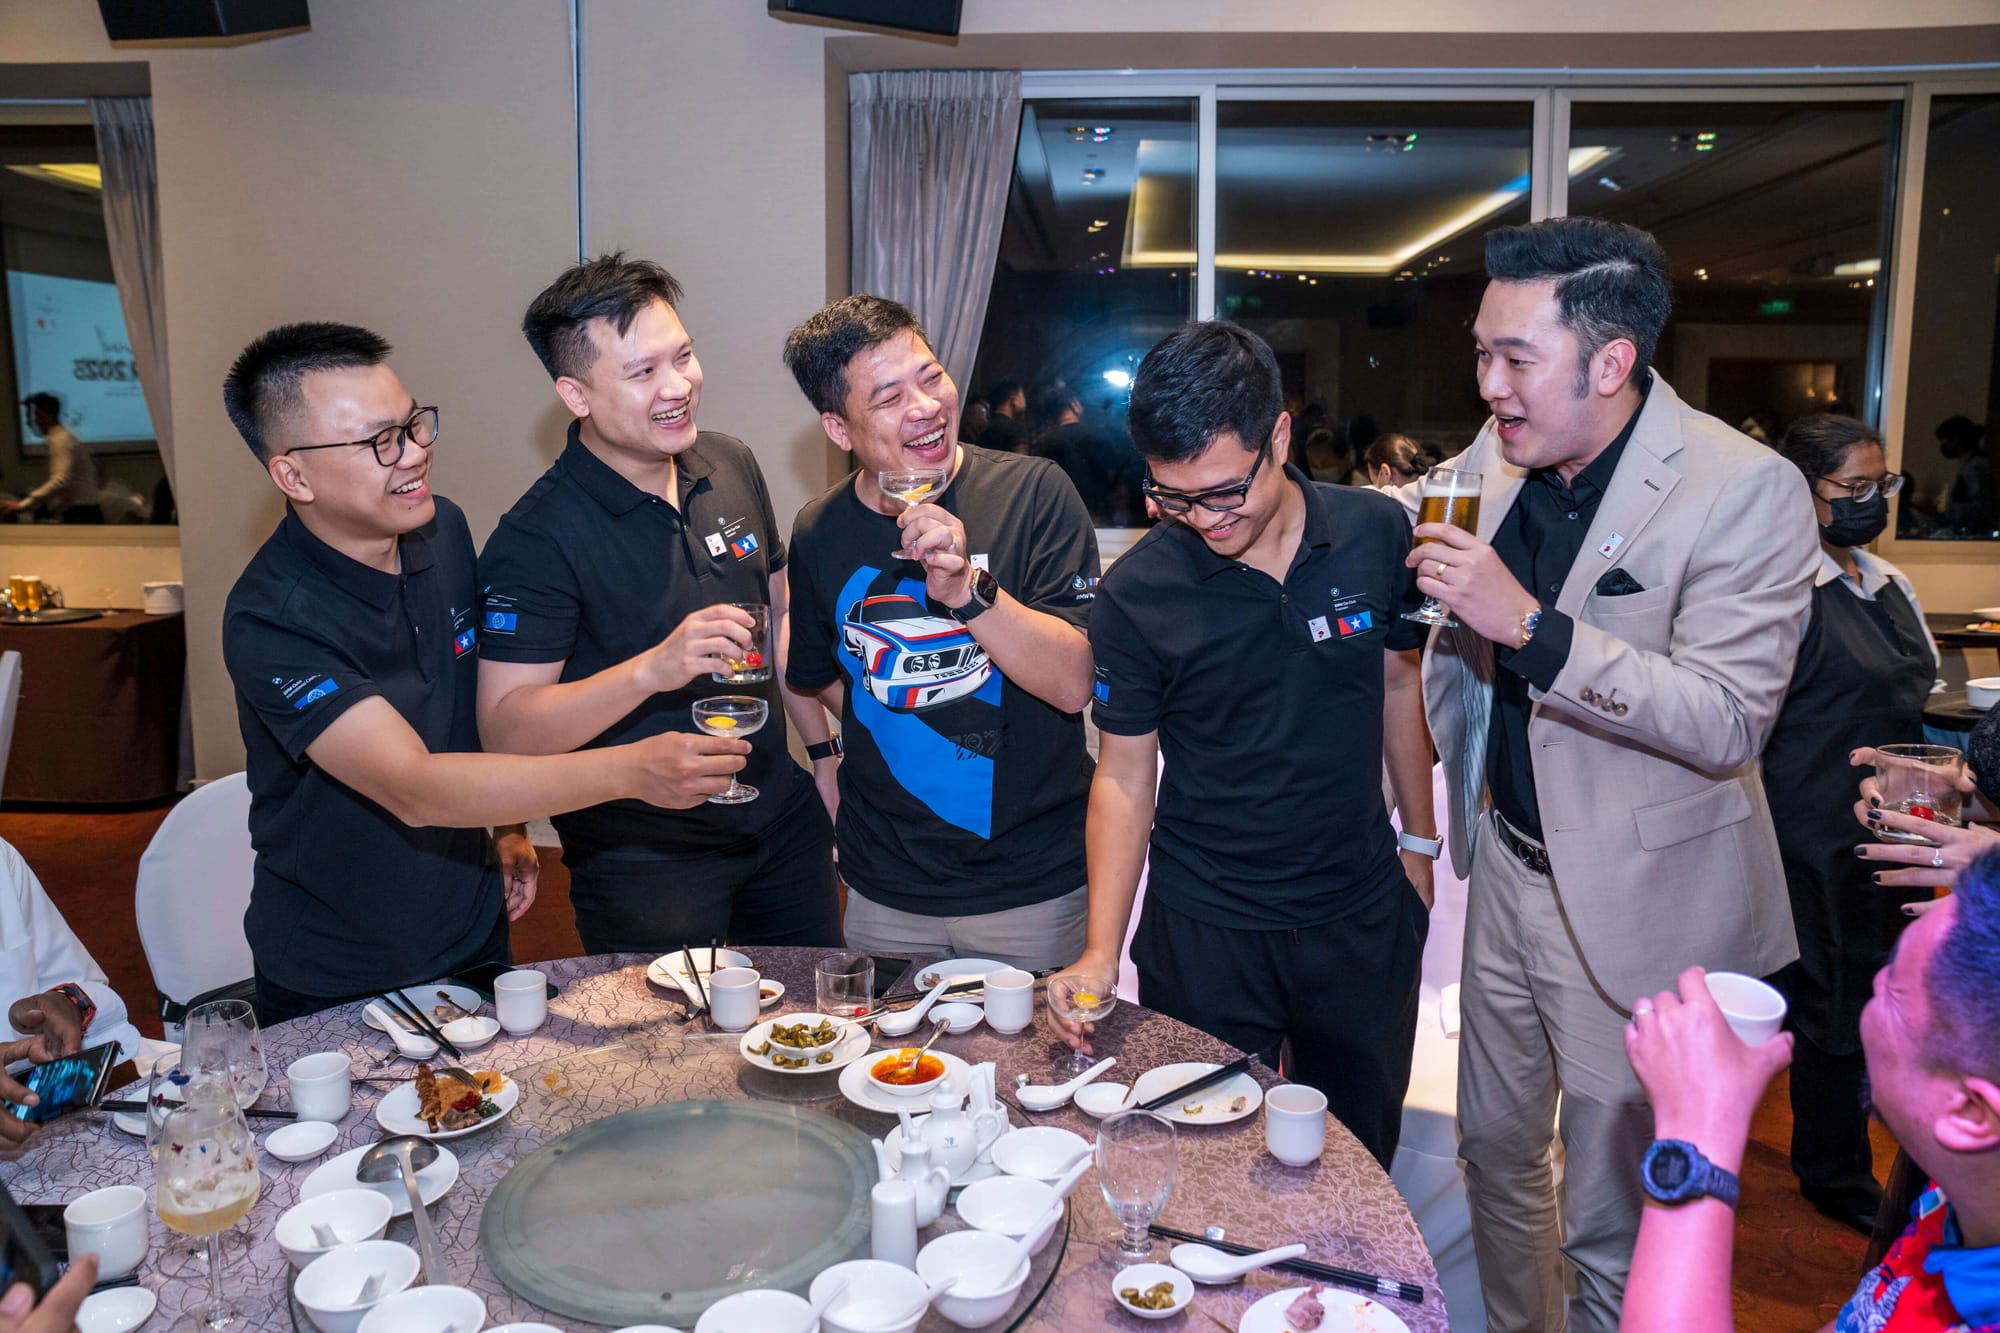 [Gallery] BMW Car Club Vietnam tham gia họp BMW Clubs Asia AGM 2023 tại Singapore